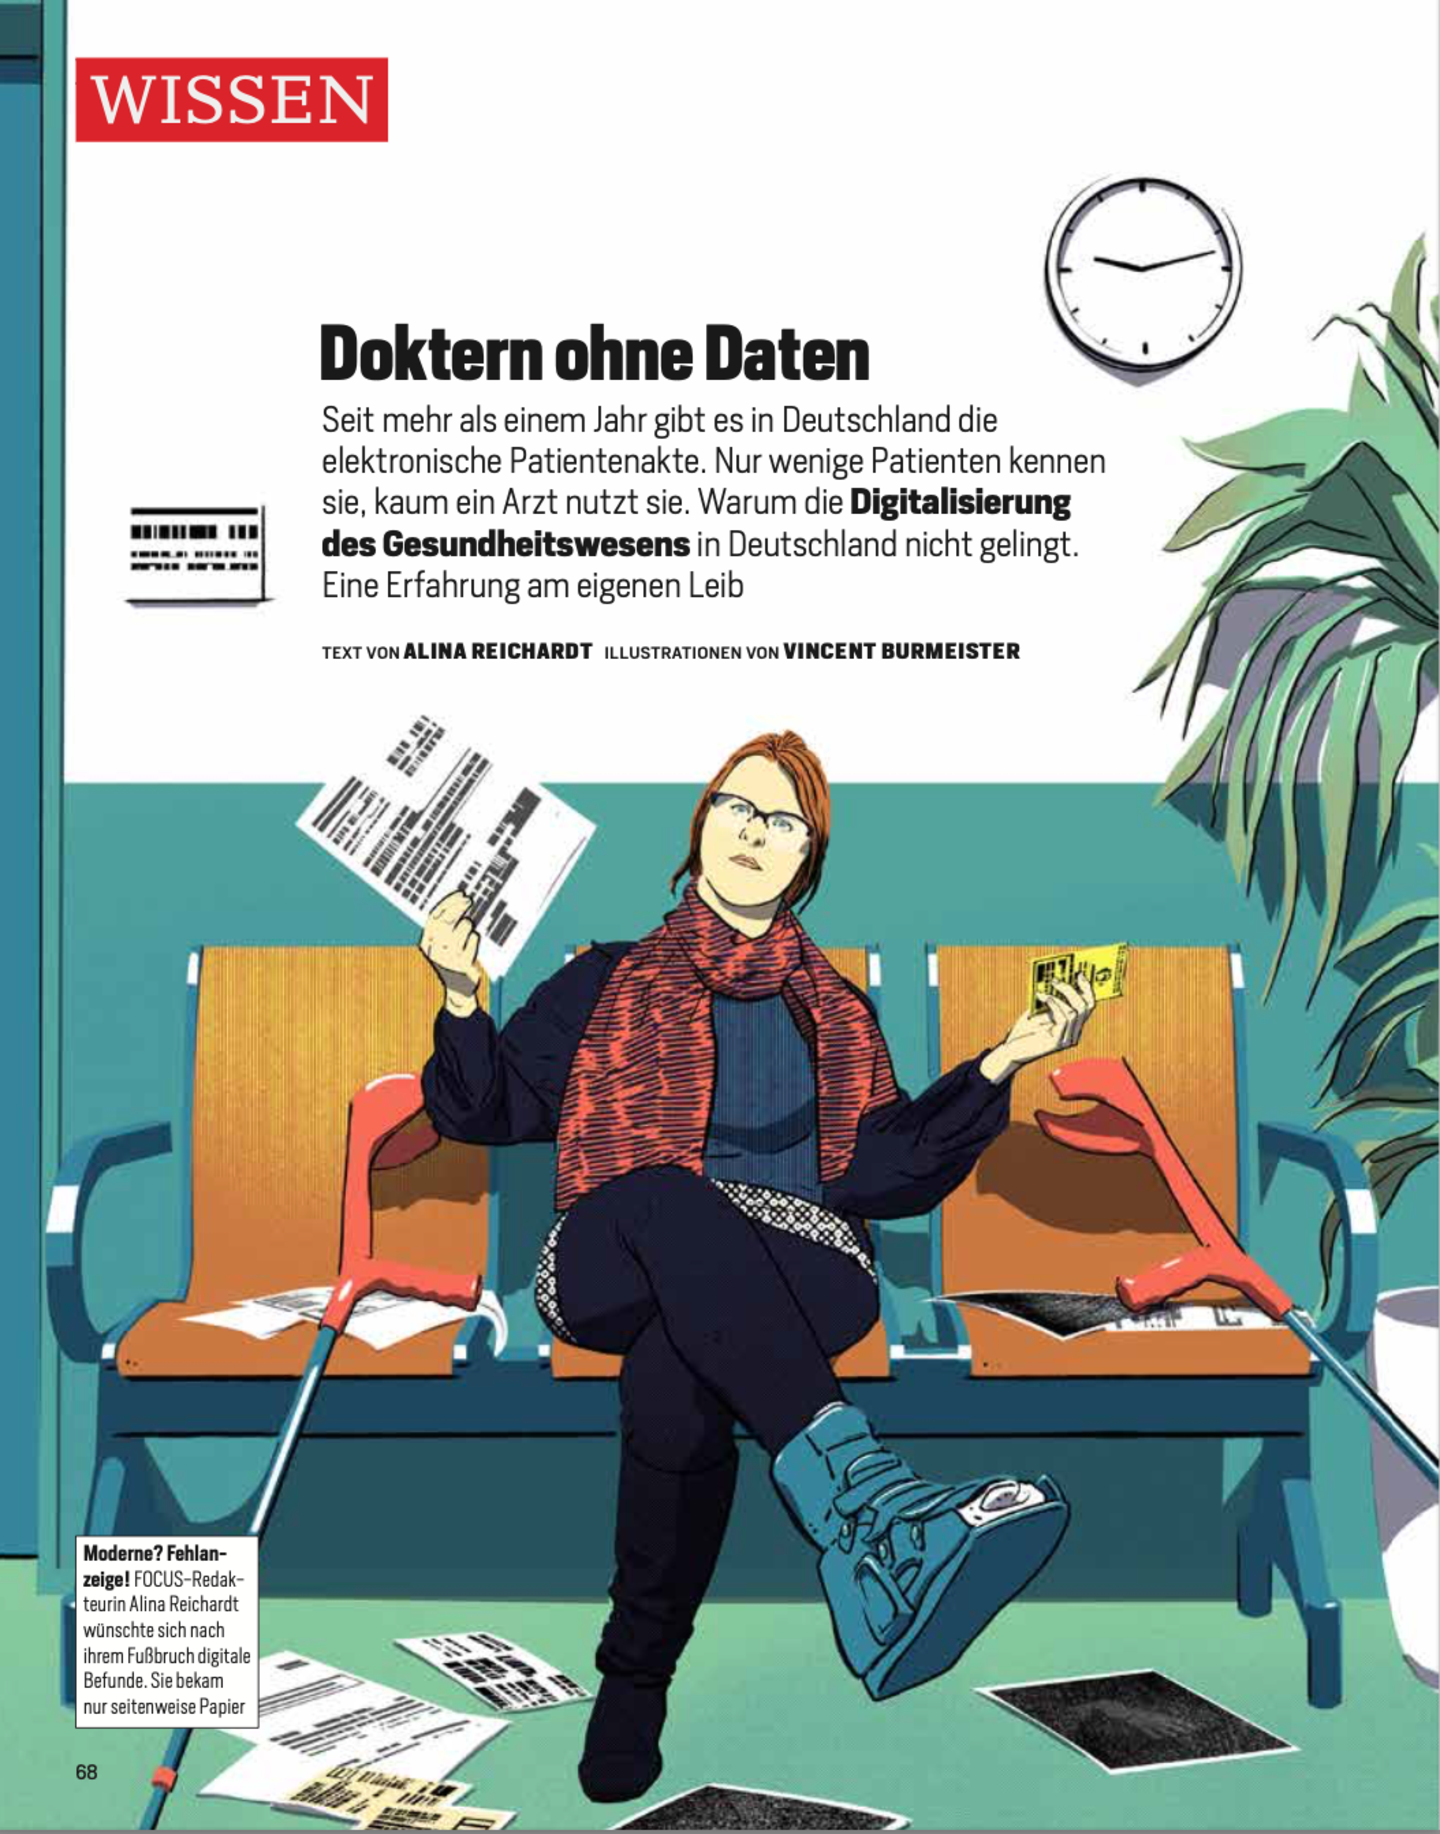 Titelseite des Beitrags des 3. Platzes des Fritz-Schösser-Medienpreises 2022 für den "Beitrag Doktor ohne Daten". 